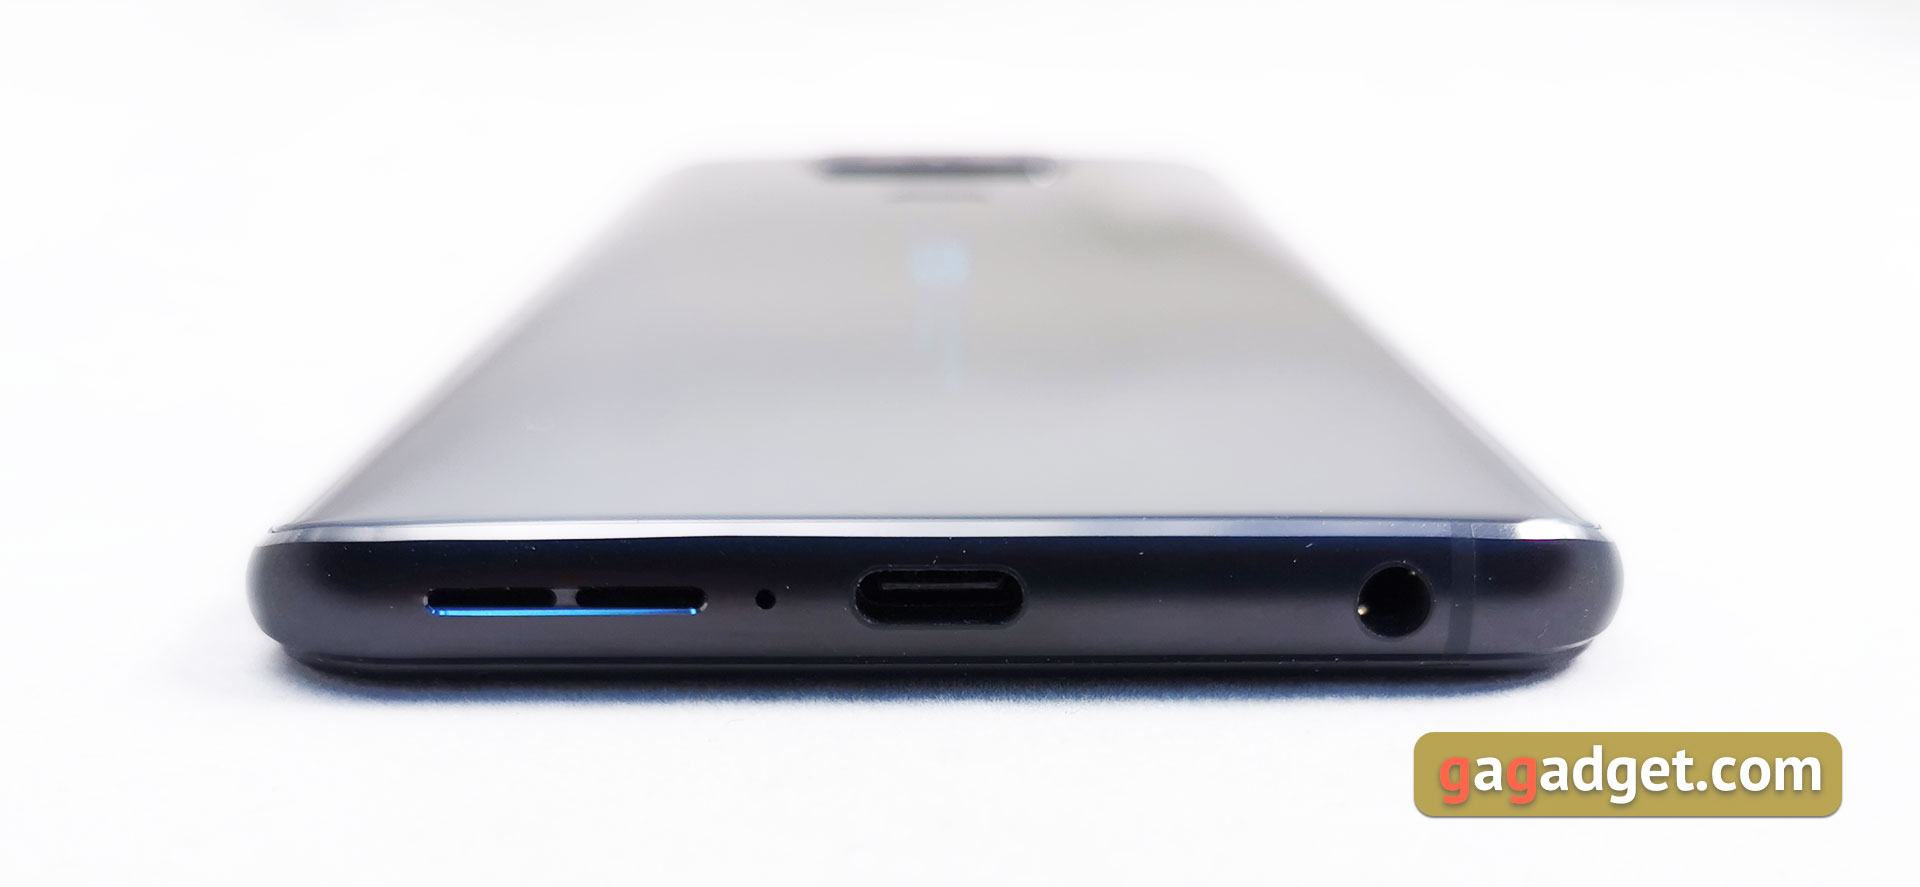 Przegląd ASUS ZenFone 6: "społecznościowy" flagowiec ze Snapdragon 855 i kamerą obracalną-8